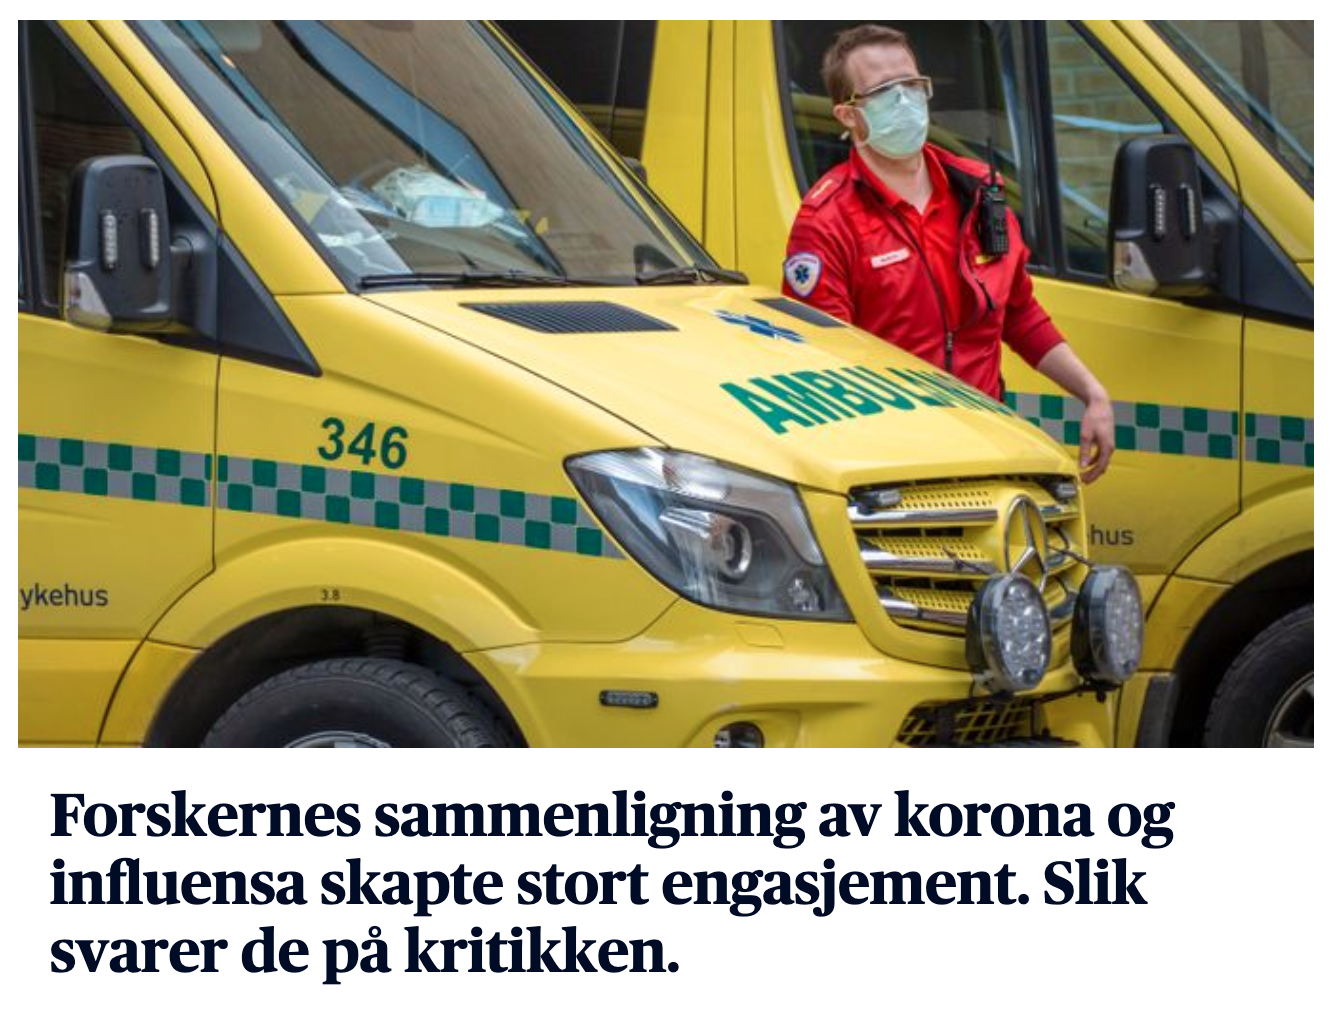 Bilde fra Aftenposten av ambulanse og teksten: Forskernes sammenligning av korona og influensa skapte debatt. Slik svarer de på kritikken.